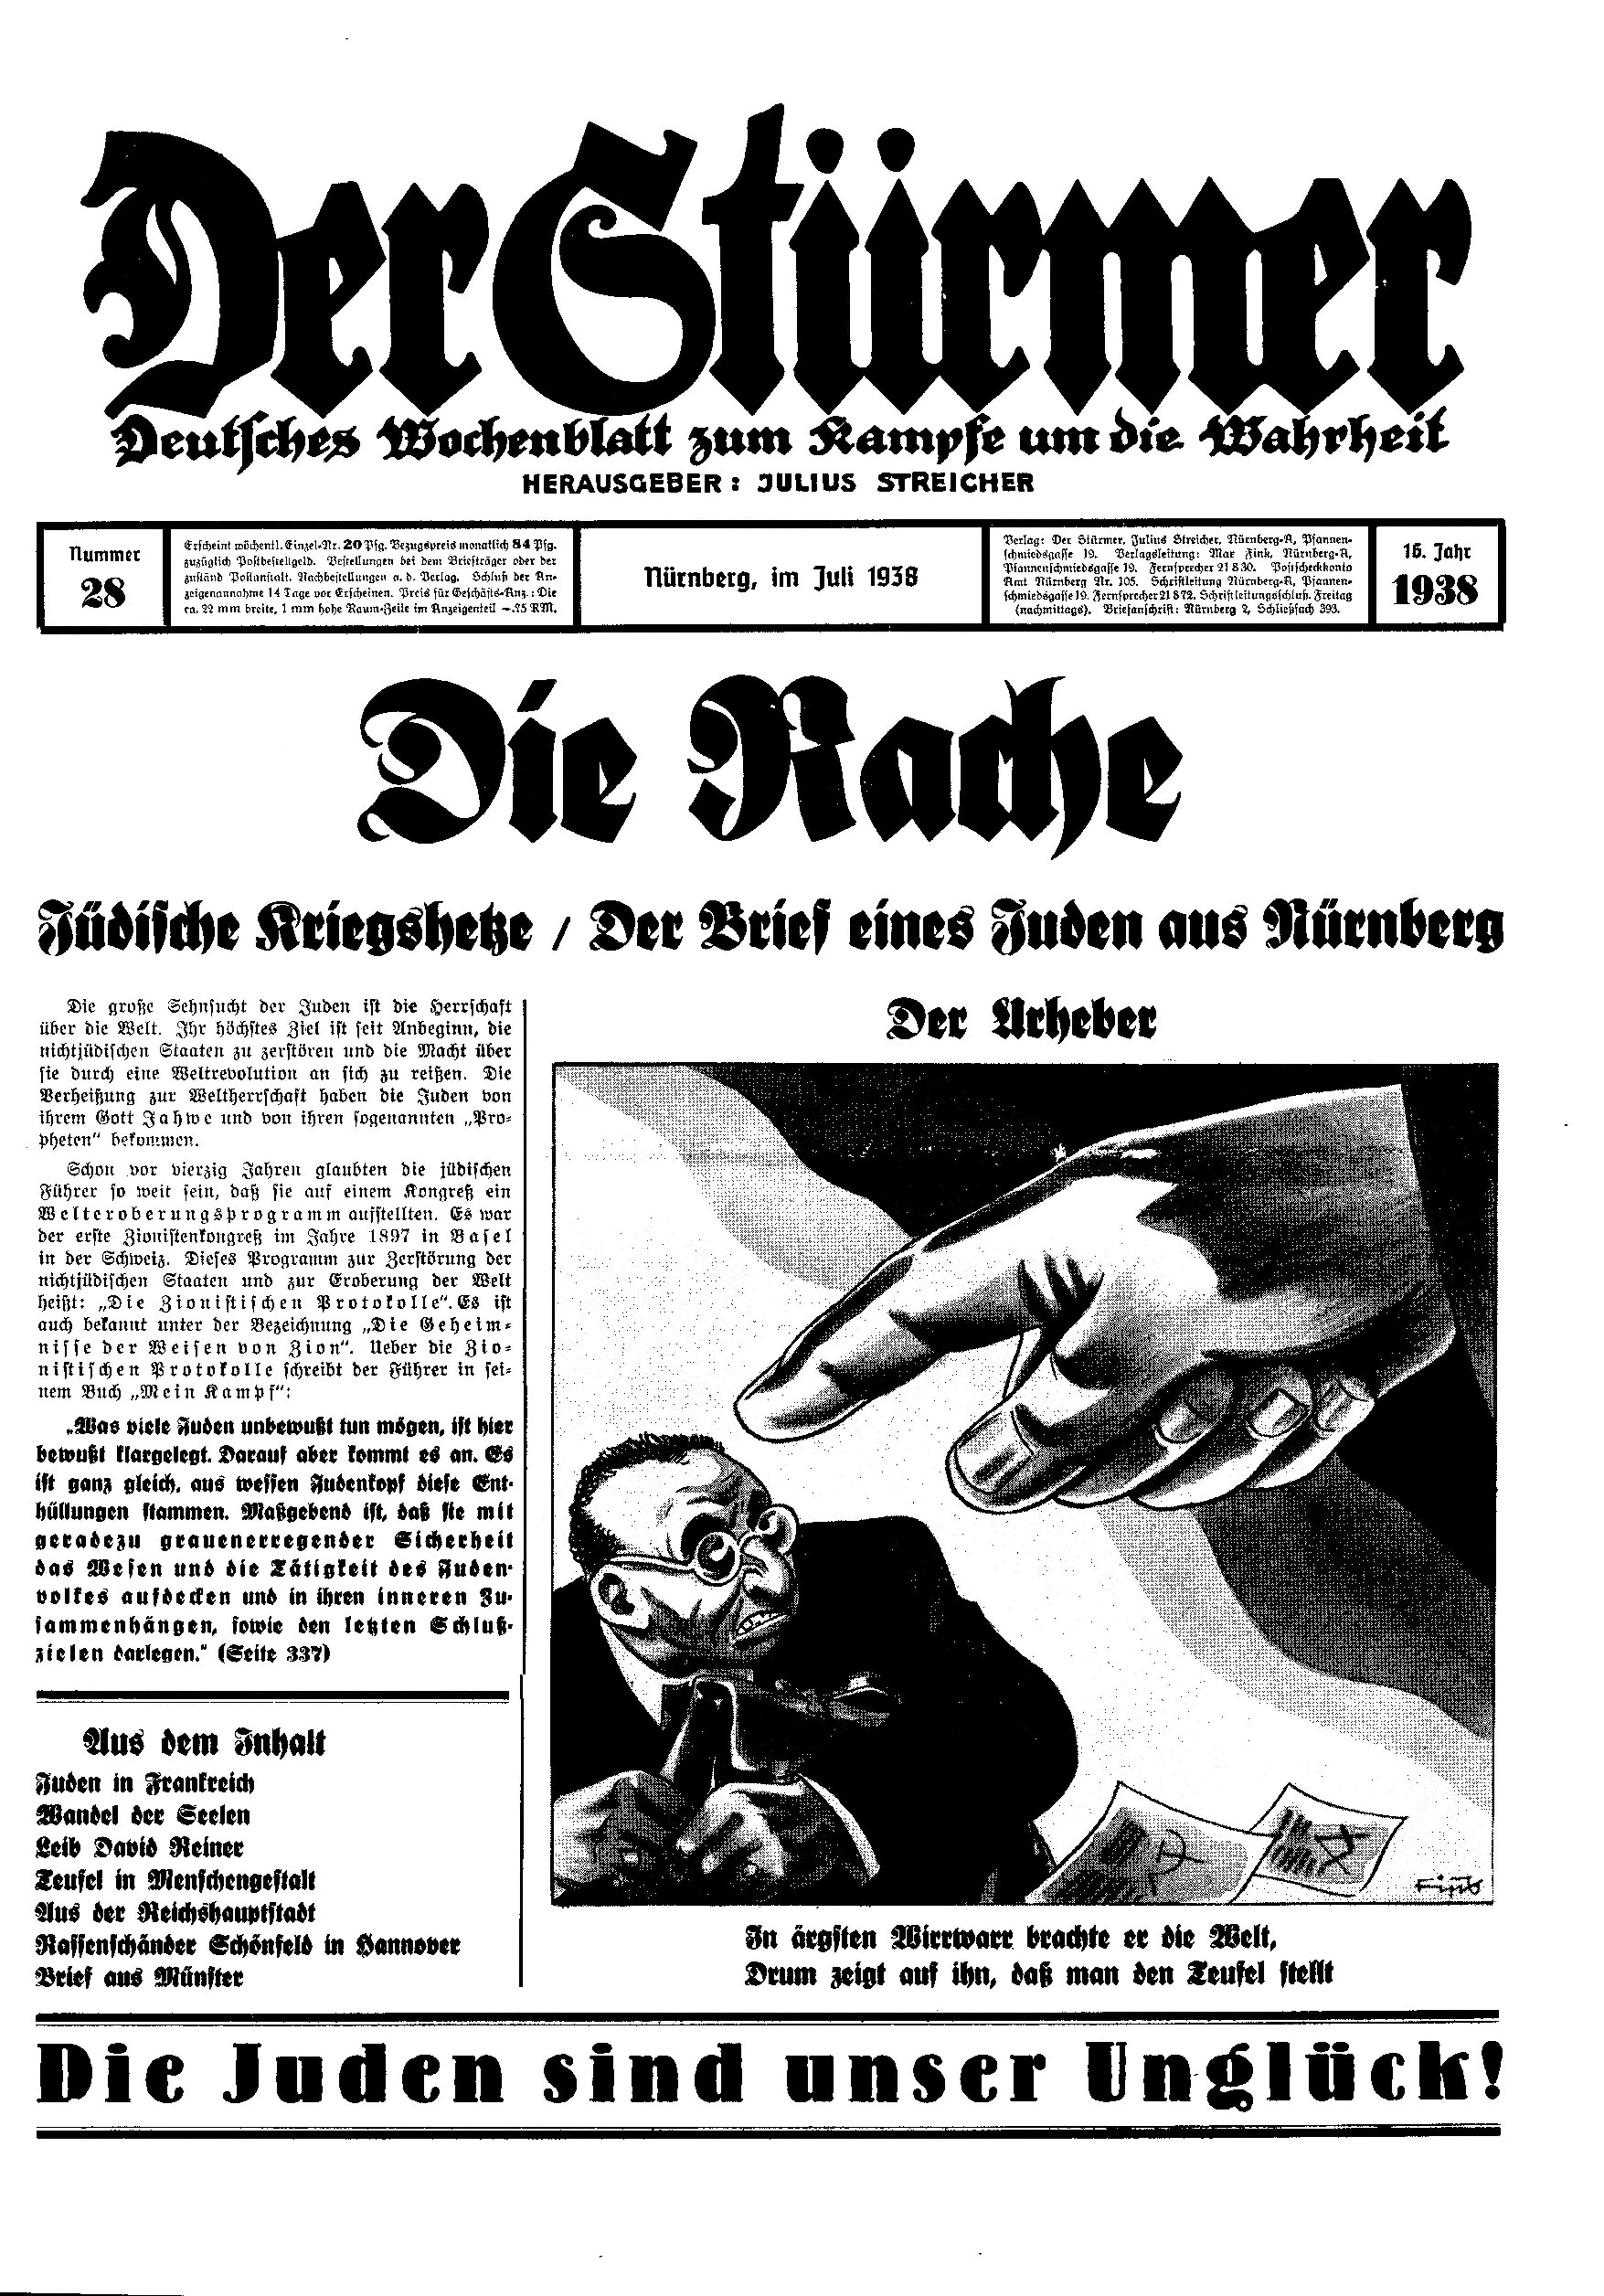 Der Stürmer - 1938 Nr. 28 - Die Rache